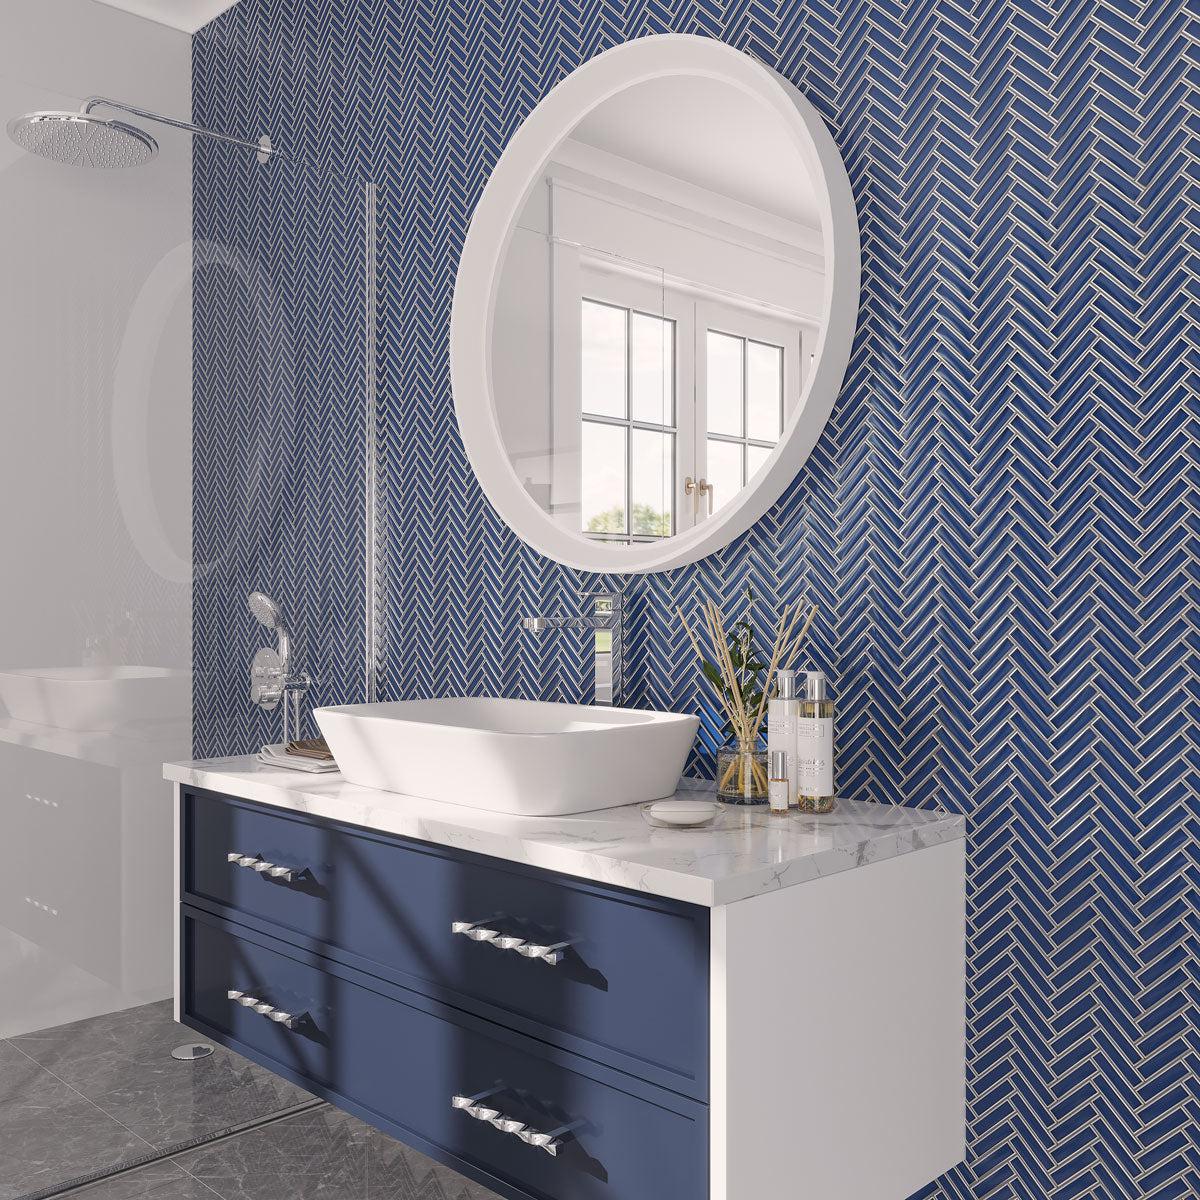 Coastal Glam blue and white bathroom with Art Deco herringbone tile walls